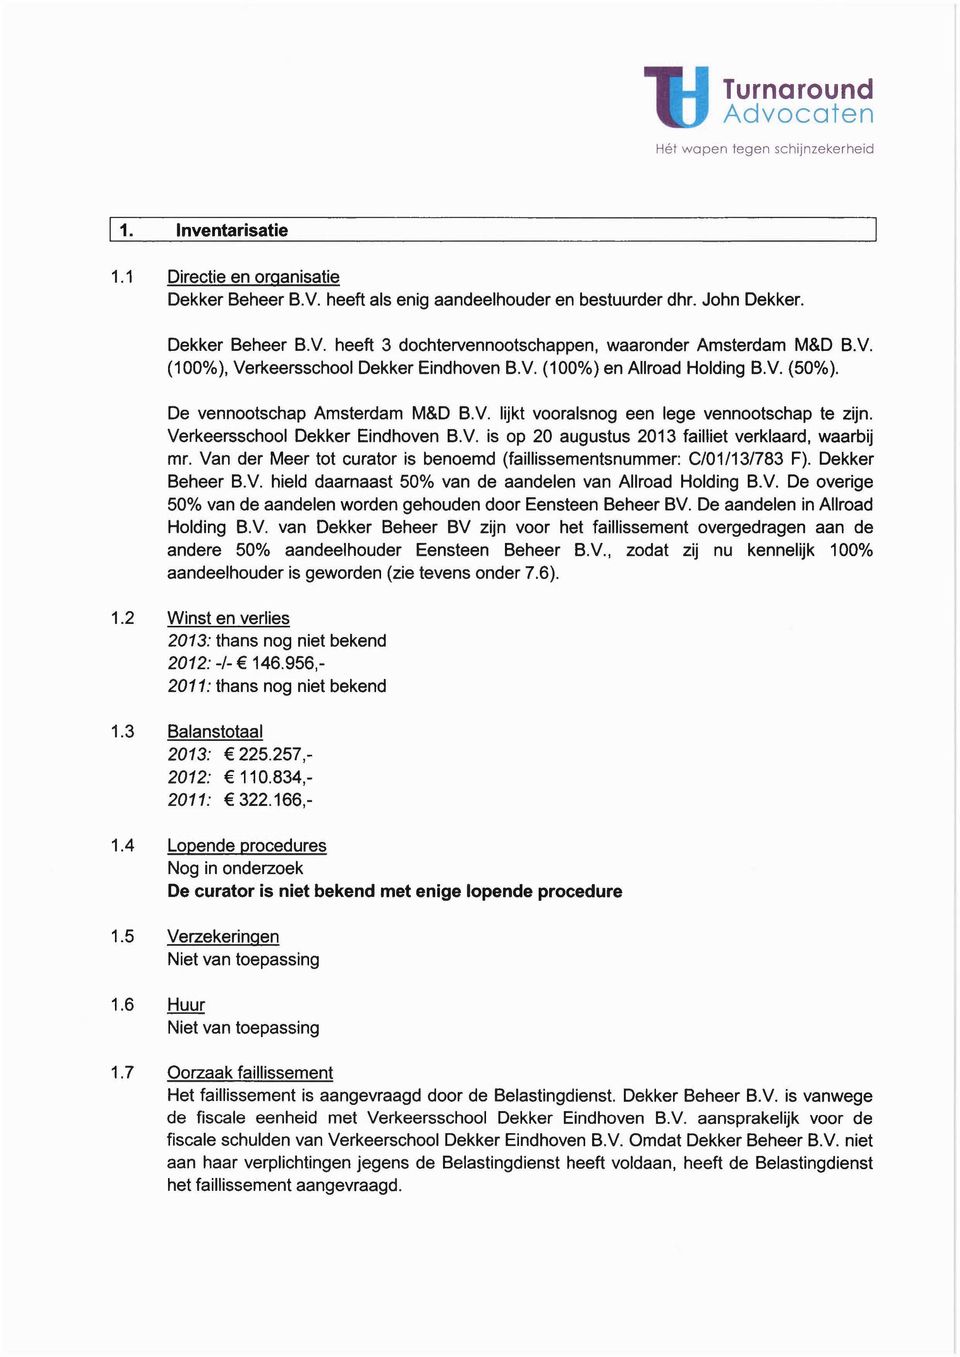 Verkeersschool Dekker Eindhoven B.v. is op 20 augustus 2013 failliet verklaard, waarbij mr. Van der Meer tot curator is benoemd (faillissementsnummer: C/01/13/783 F). Dekker Beheer B.V. hield daarnaast 50% van de aandelen van Allroad Holding B.